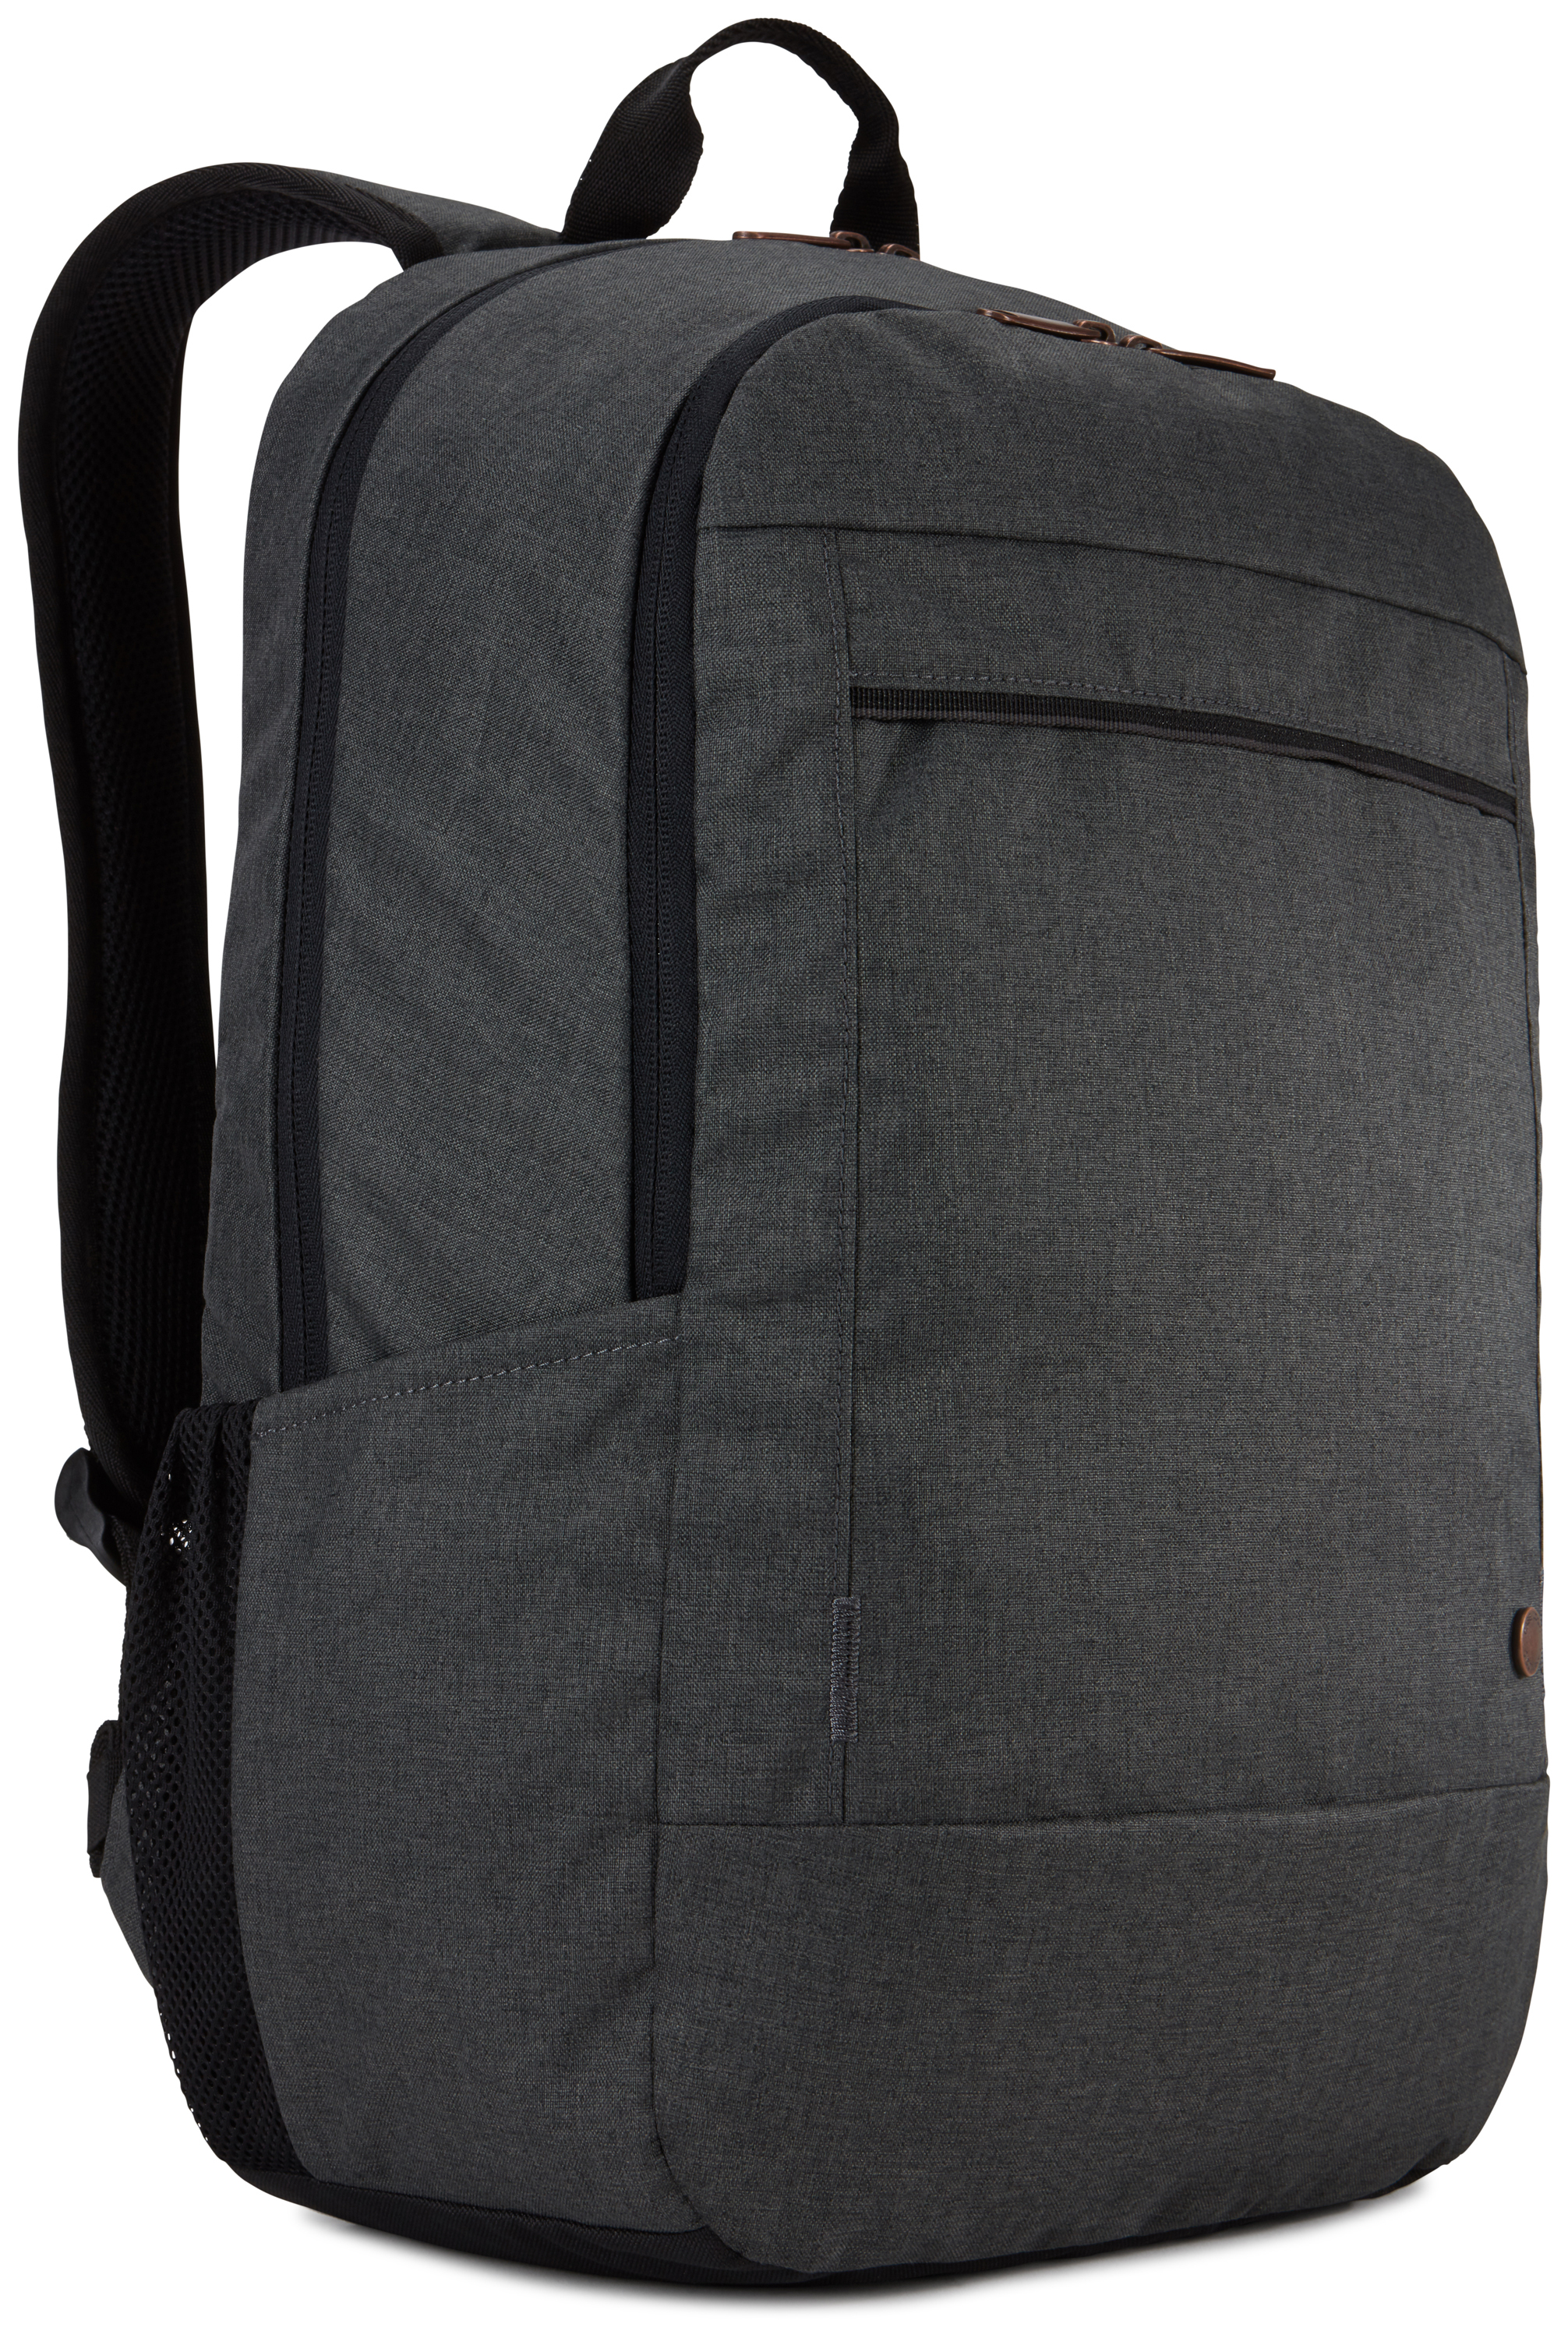 Case Logic Era Polyester Black backpack